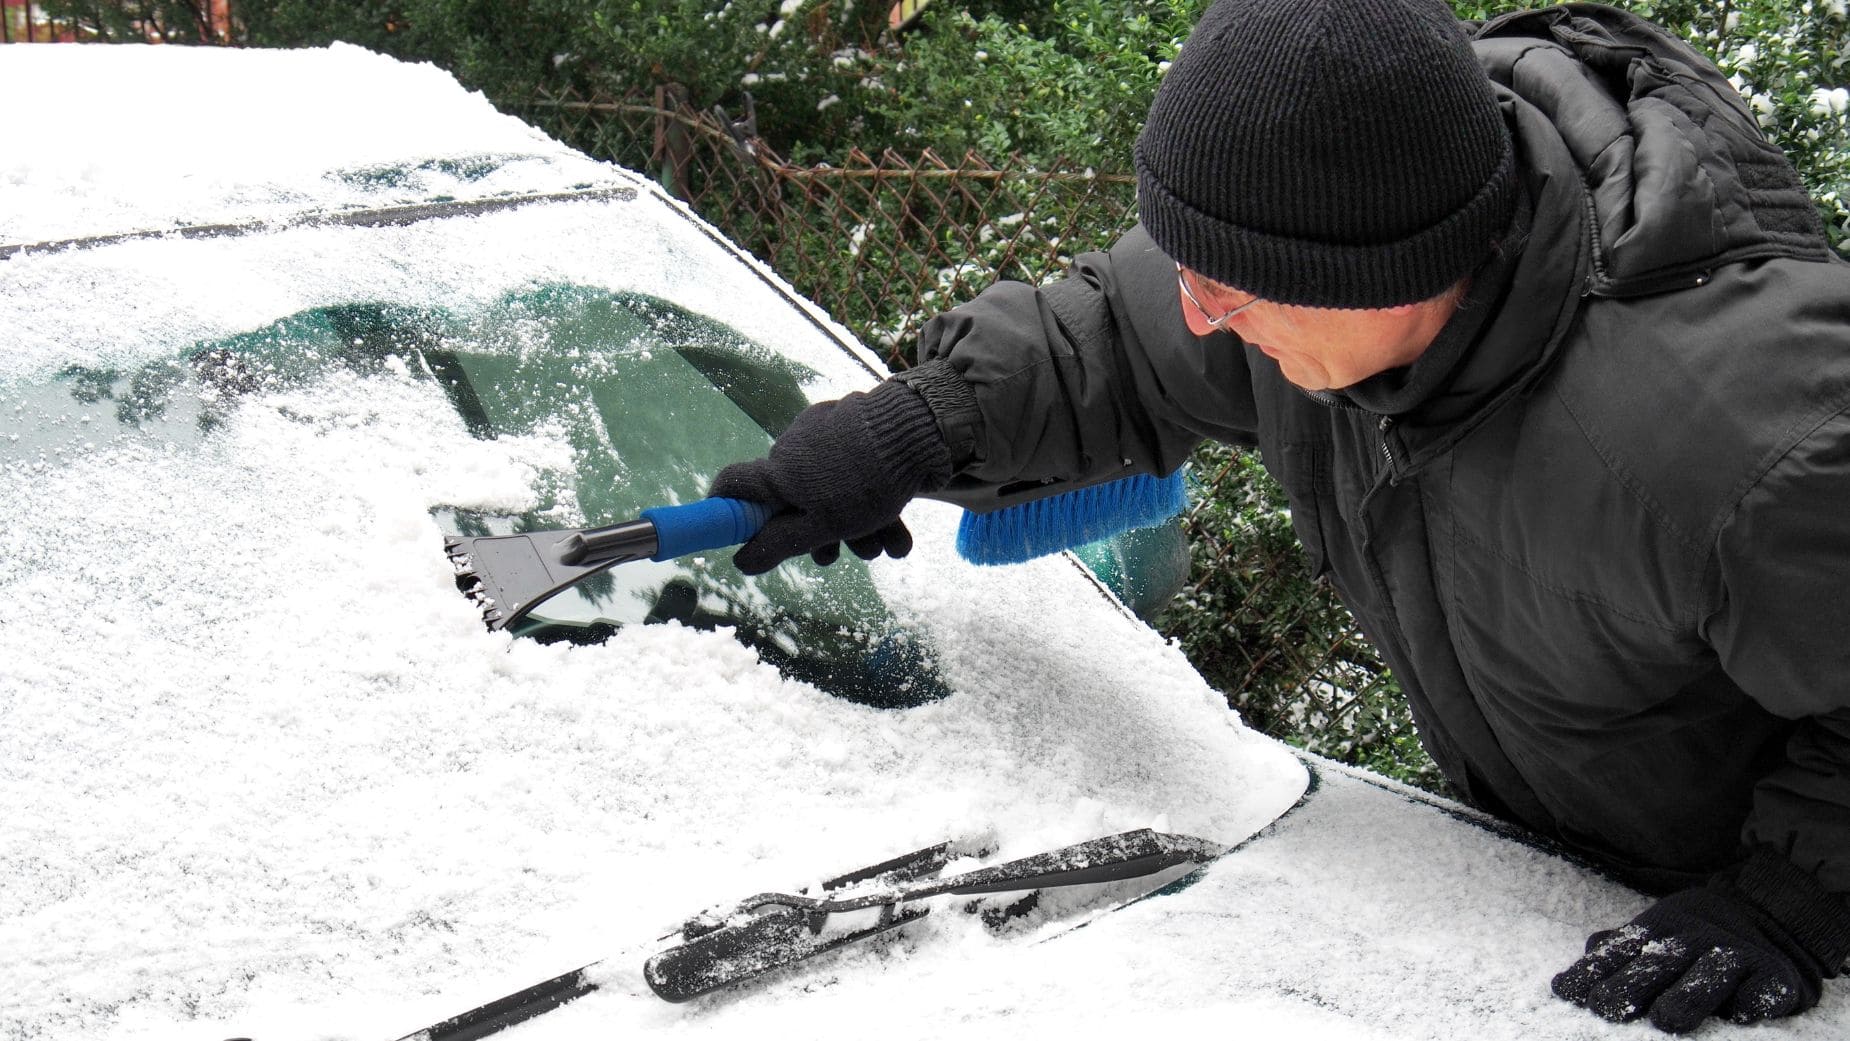 La DGT avisa: nunca quites así el hielo del cristal del coche